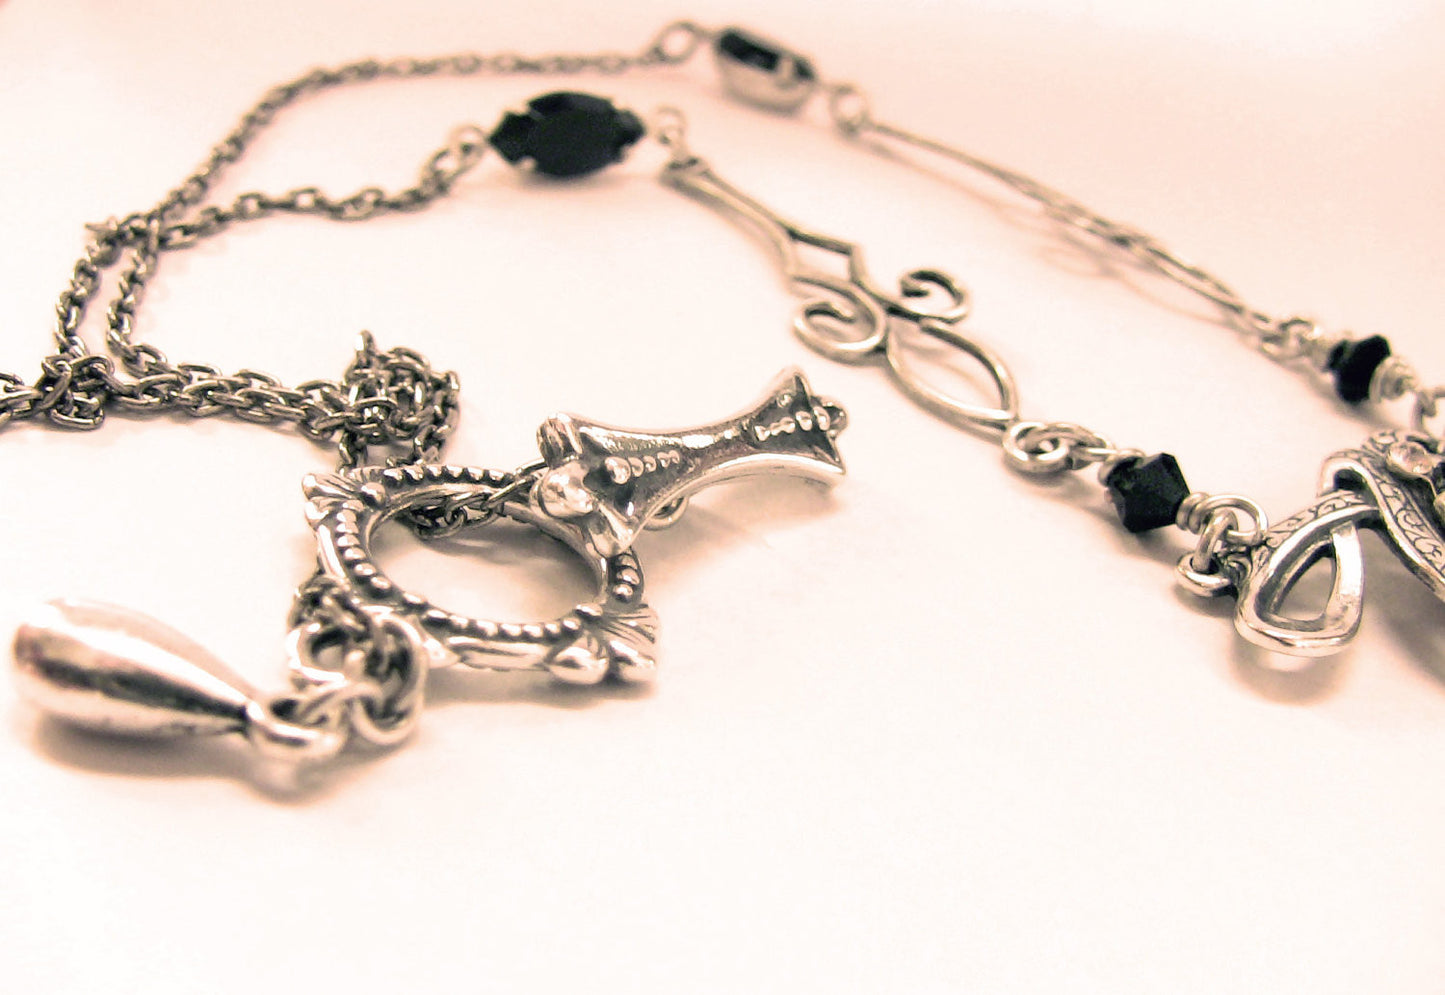 Silver Necklace with Black Swarovski Crystal - Aranwen's Jewelry
 - 3